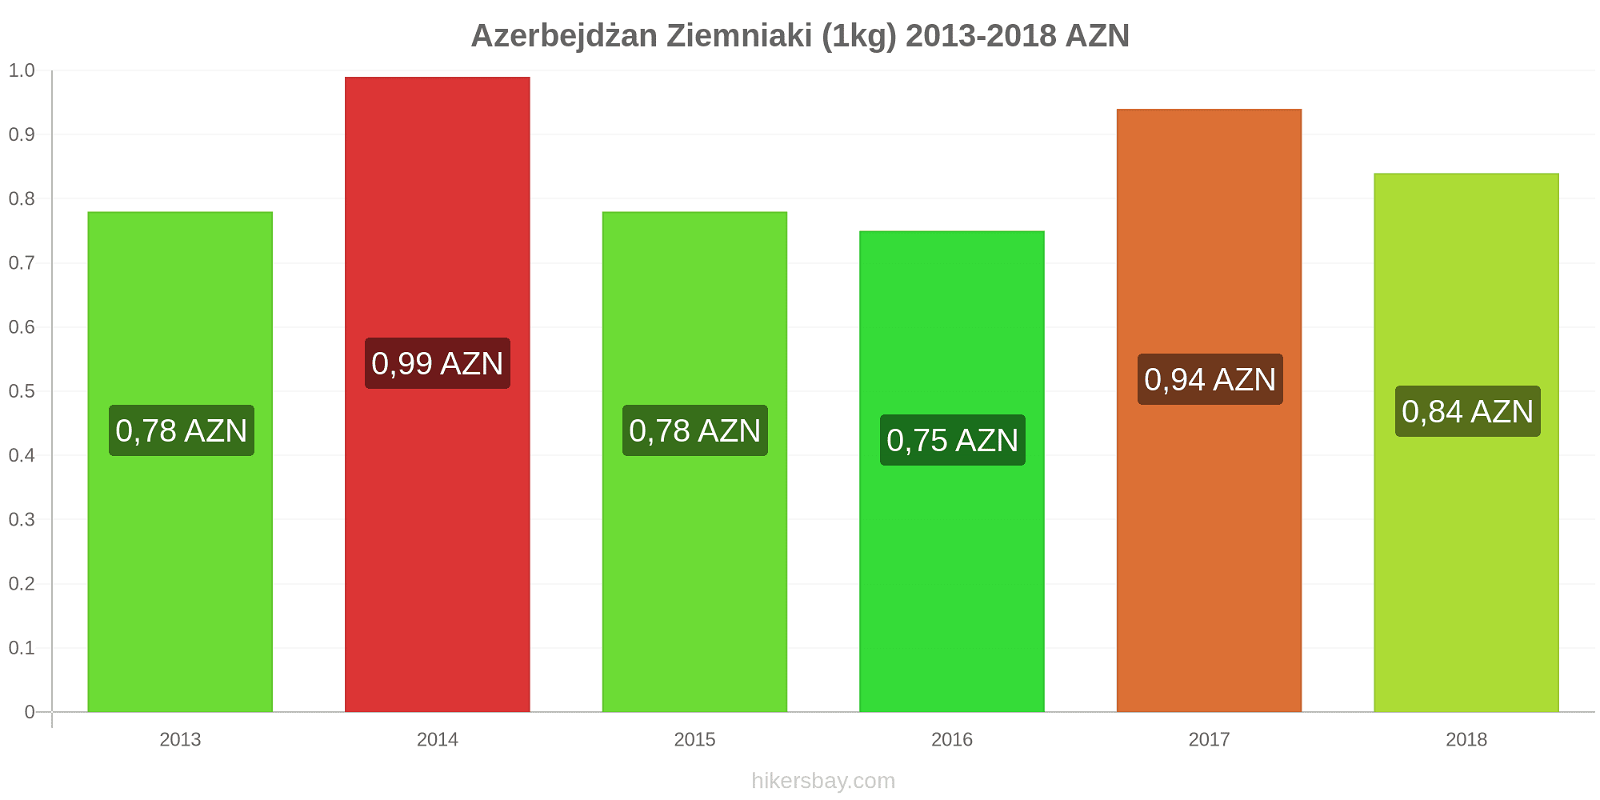 Azerbejdżan zmiany cen Ziemniaki (1kg) hikersbay.com